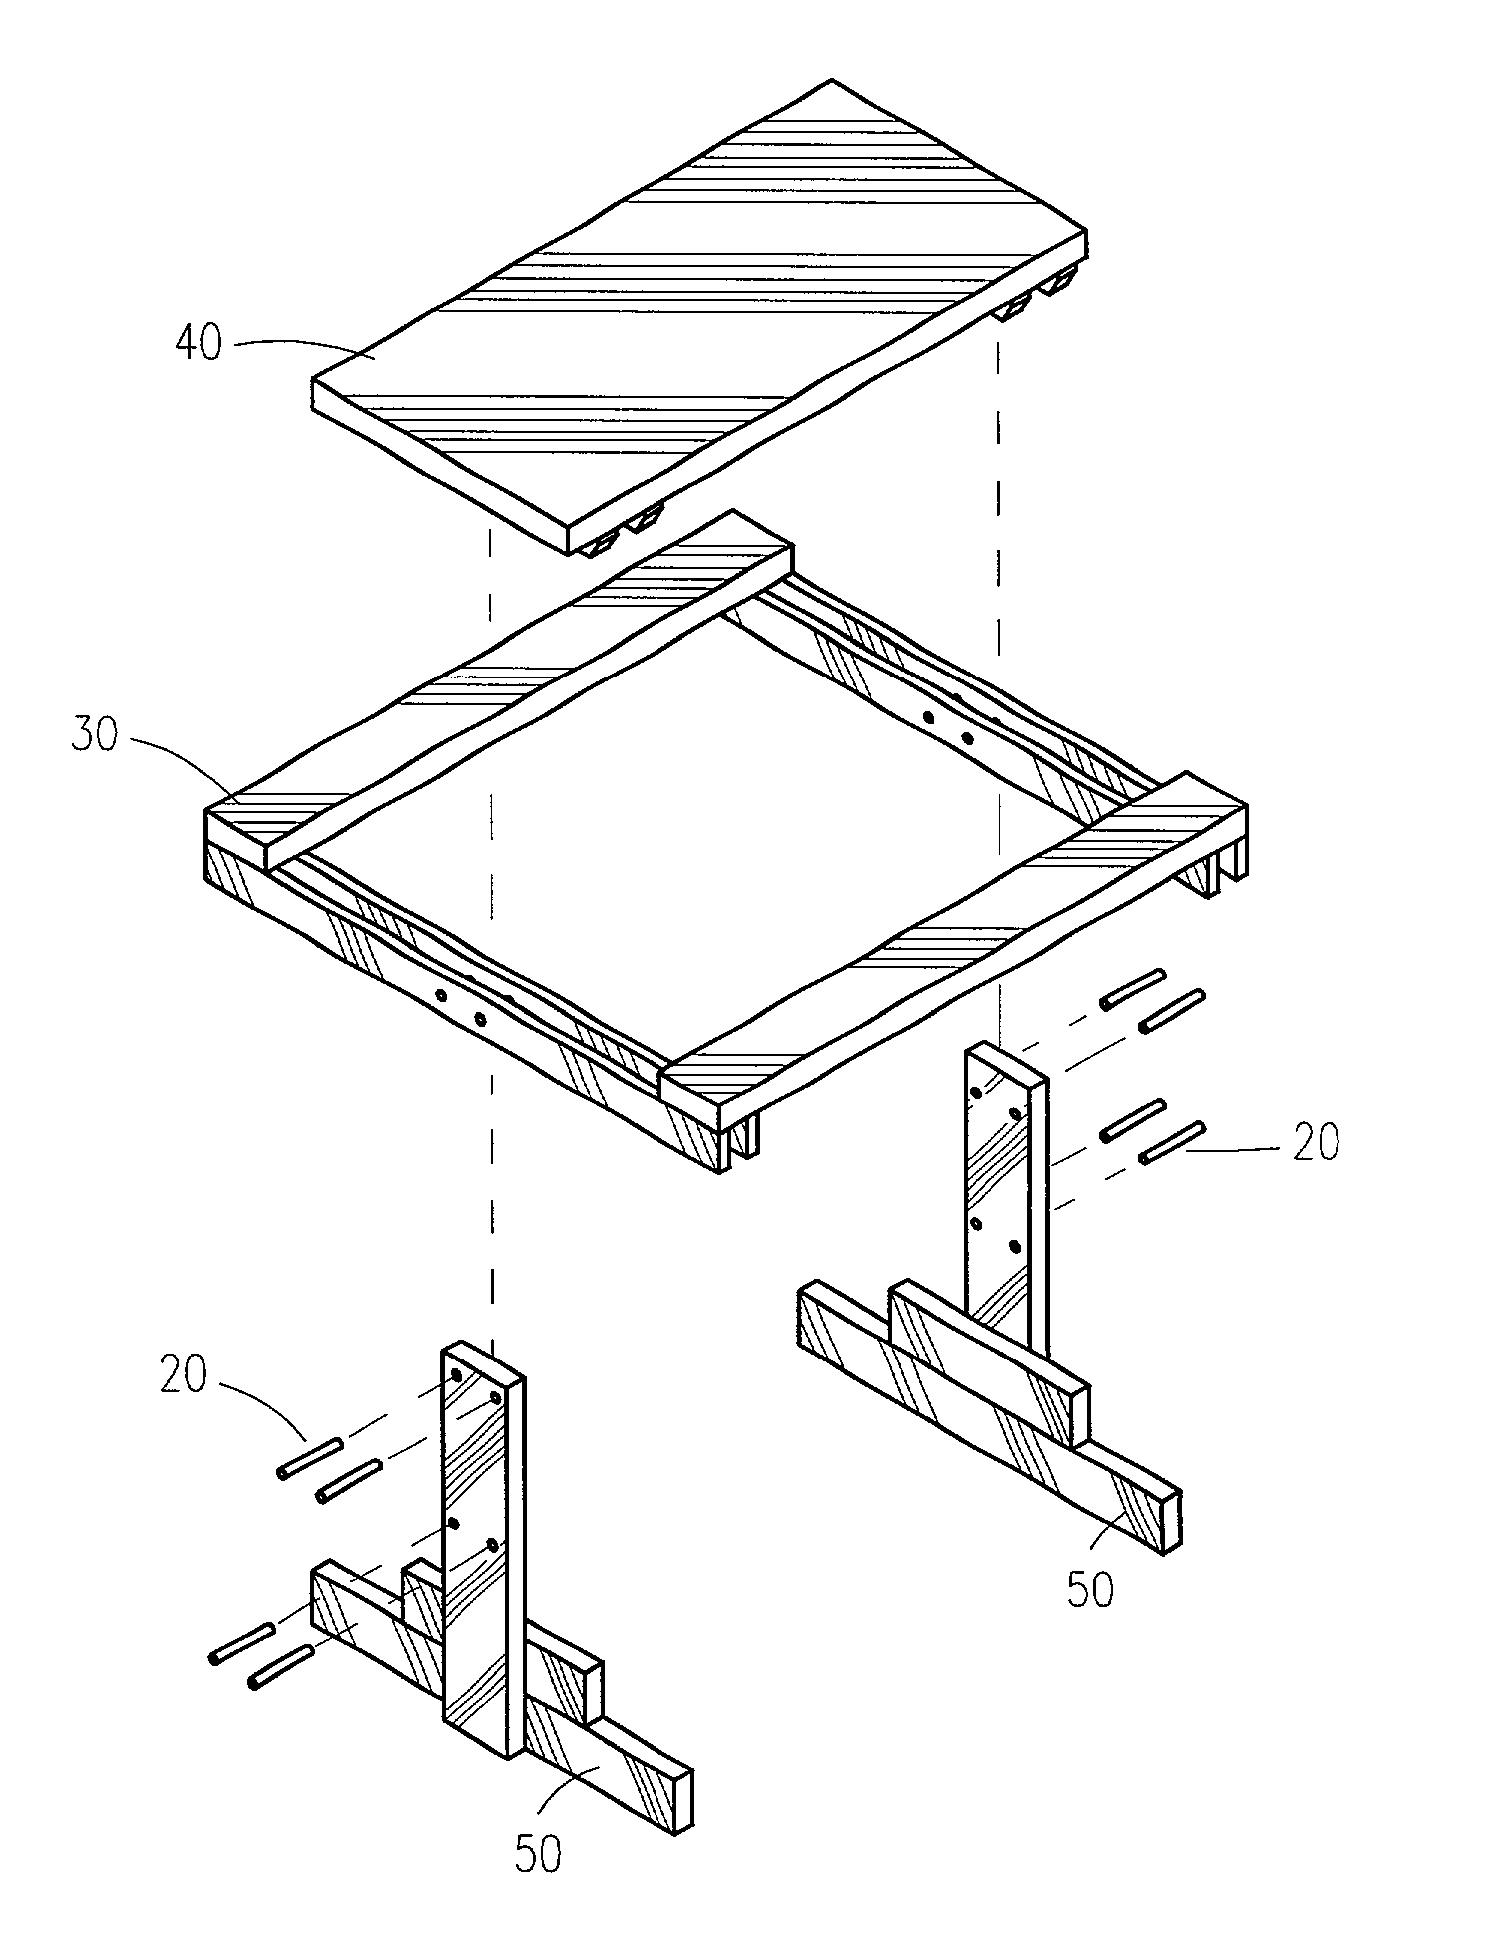 Modular picnic table